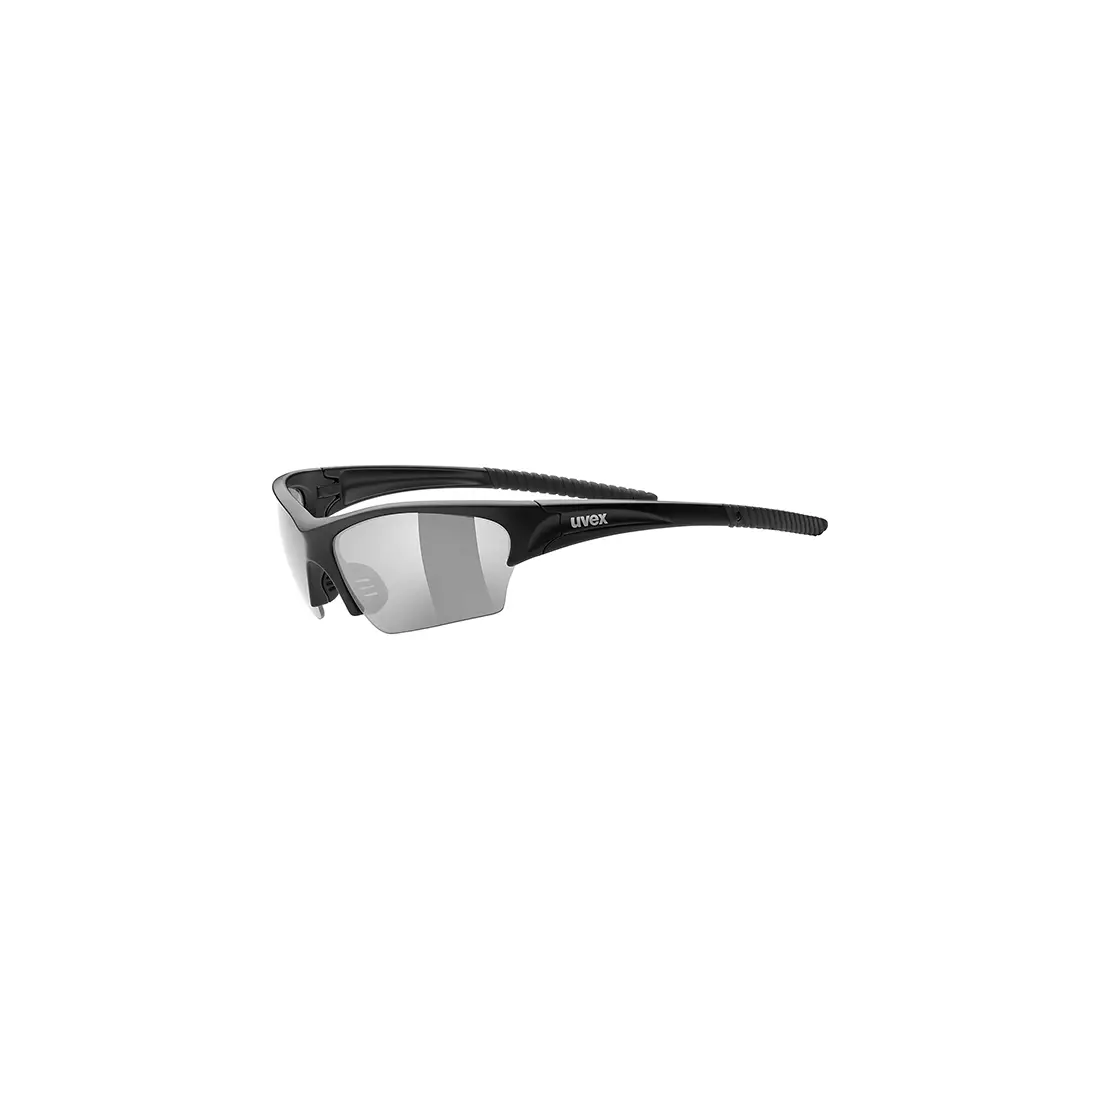 Cyklistické / sportovní brýle Uvex Sunsation 53/0/606/2210/UNI SS19